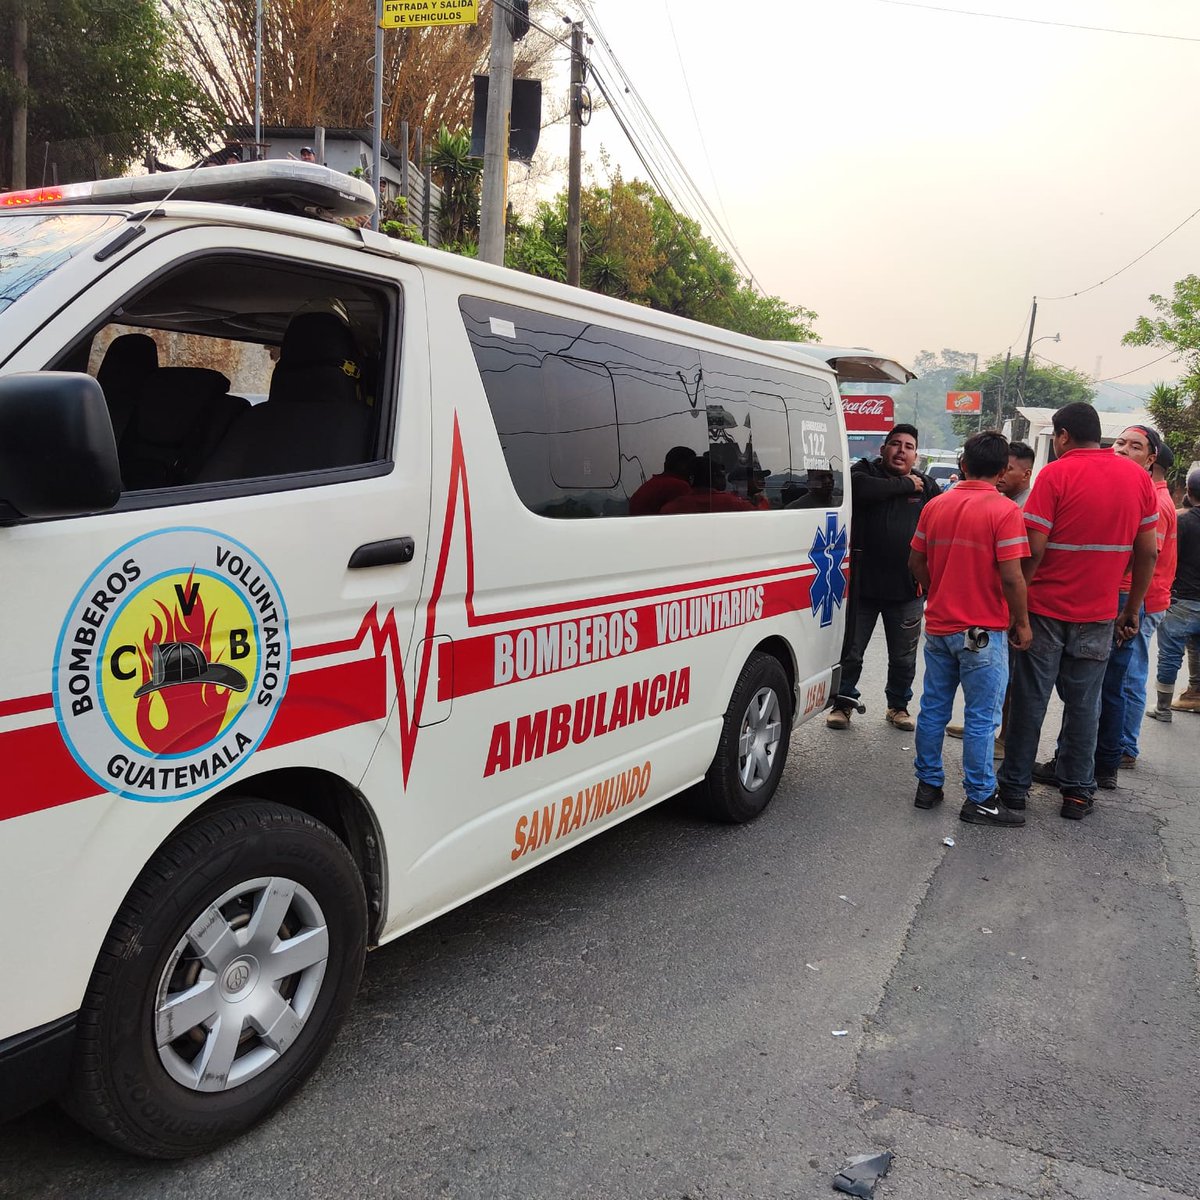 Caserio Lo de Guerrero, San Raymundo, se originó accidente de tránsito. Bomberos Voluntarios de la 115 Cía. auxiliaron a los tripulantes, trasladando a uno de ellos, al centro asistencial. #CVBalServicio